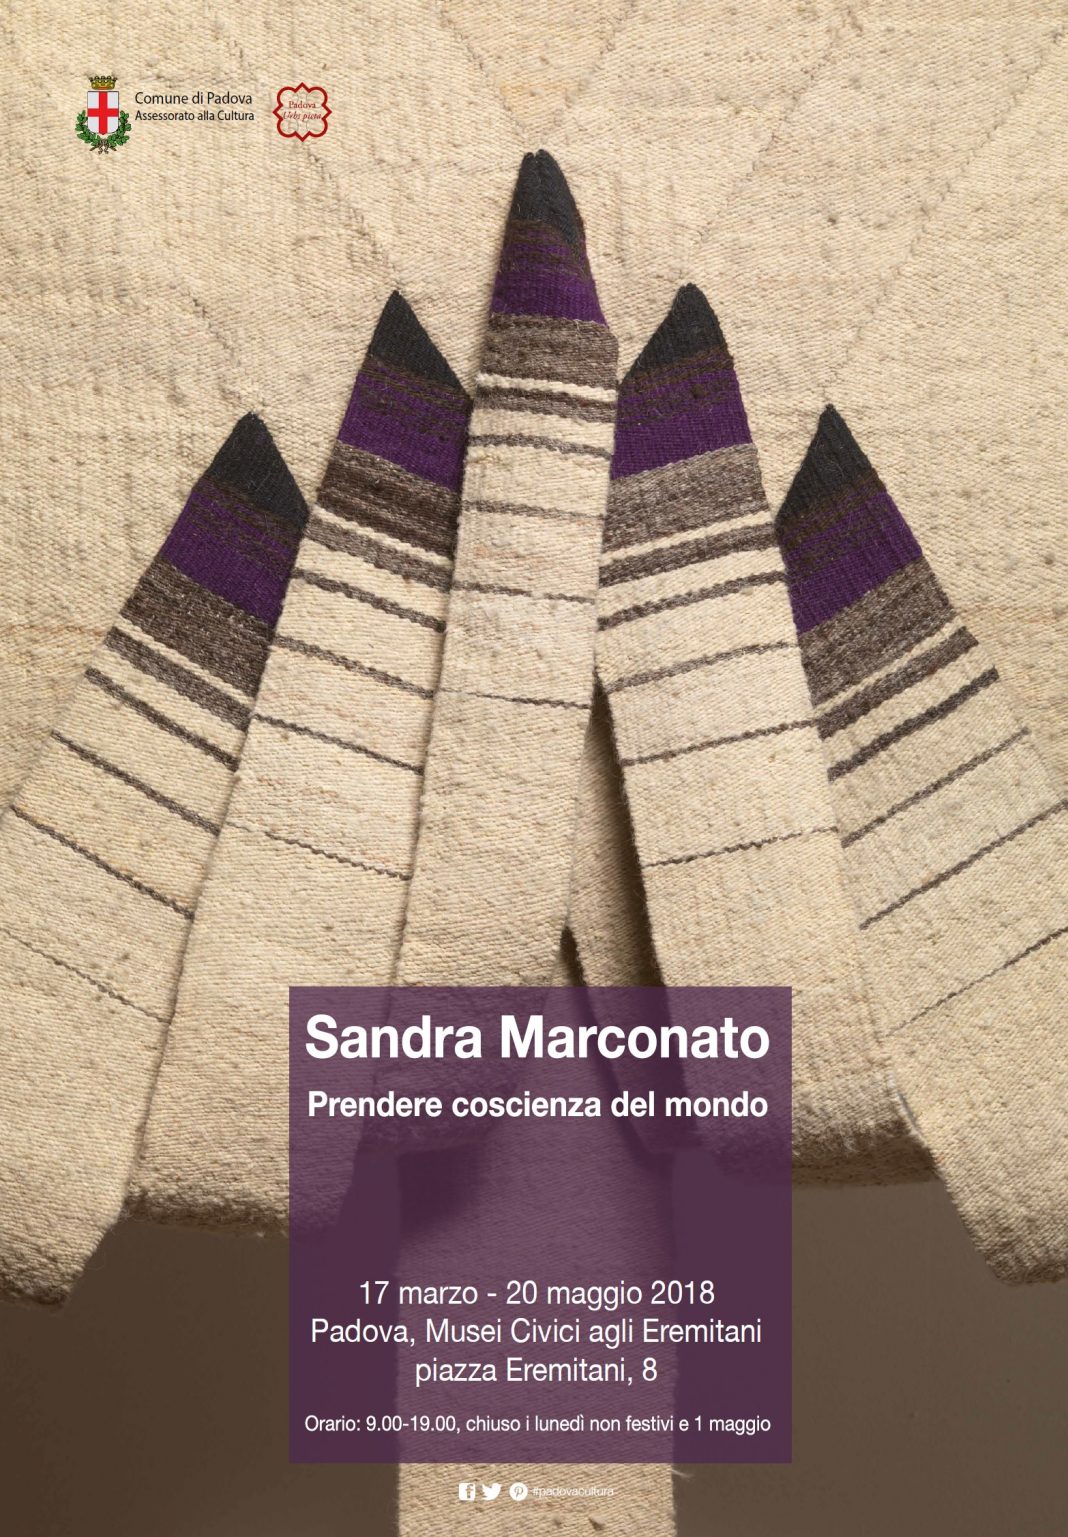 Sandra Marconato – Prendere coscienza del mondohttps://www.exibart.com/repository/media/eventi/2018/03/sandra-marconato-8211-prendere-coscienza-del-mondo-1068x1537.jpg